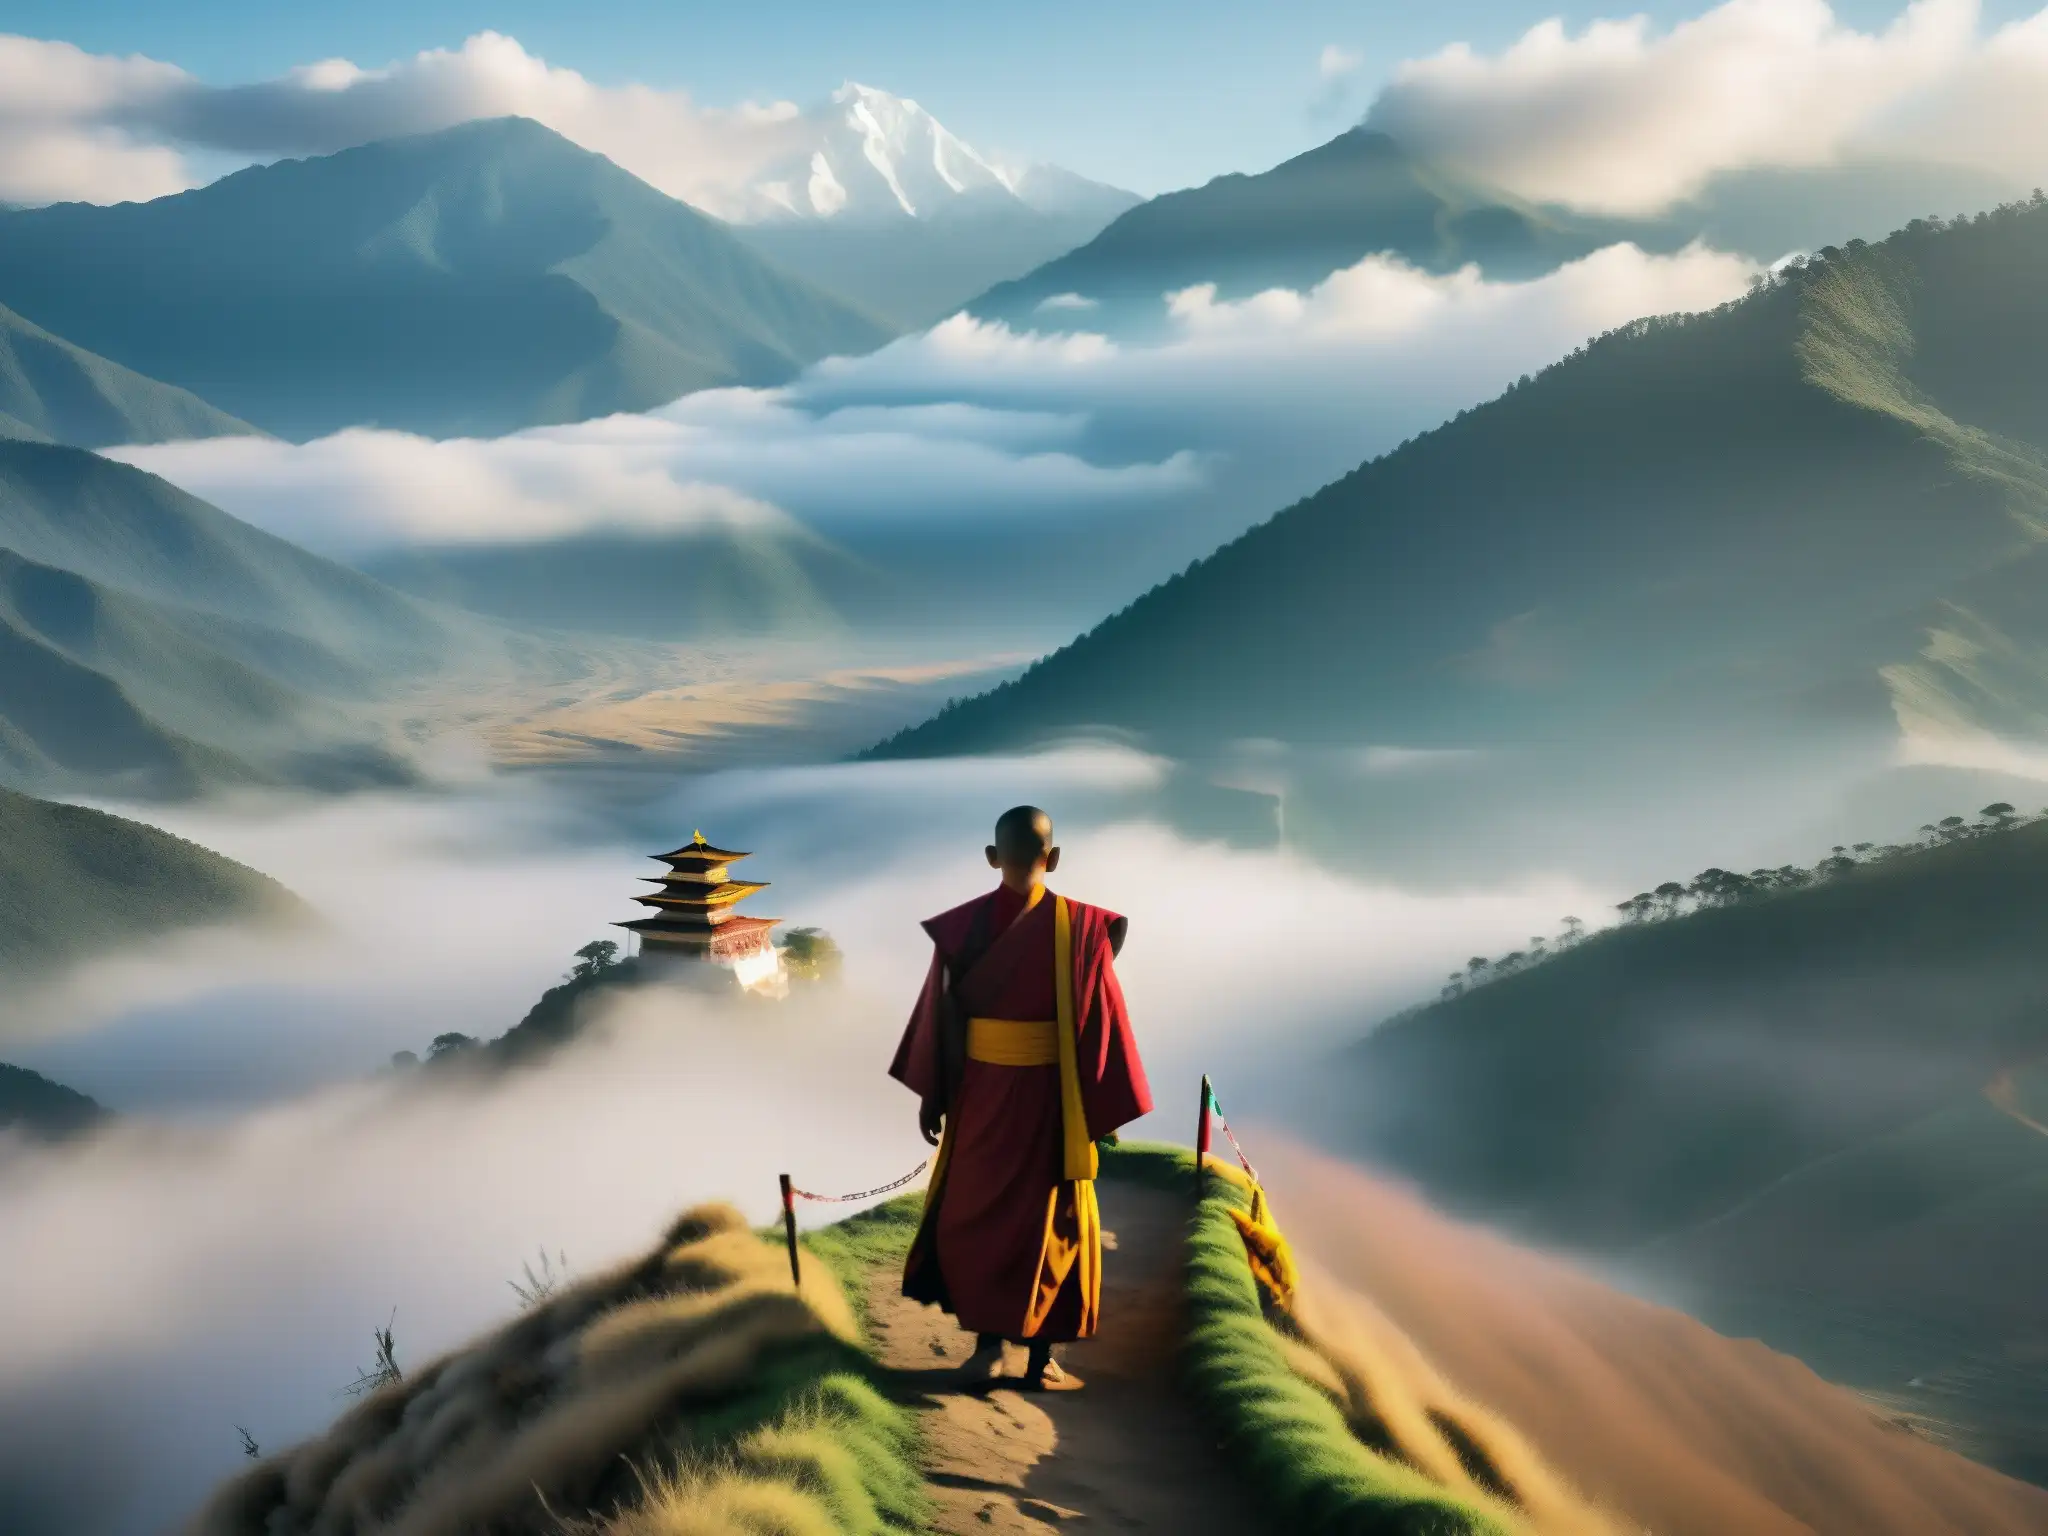 Un monje solitario contempla el valle en la niebla de la mañana, rodeado de vibrantes banderas de oración